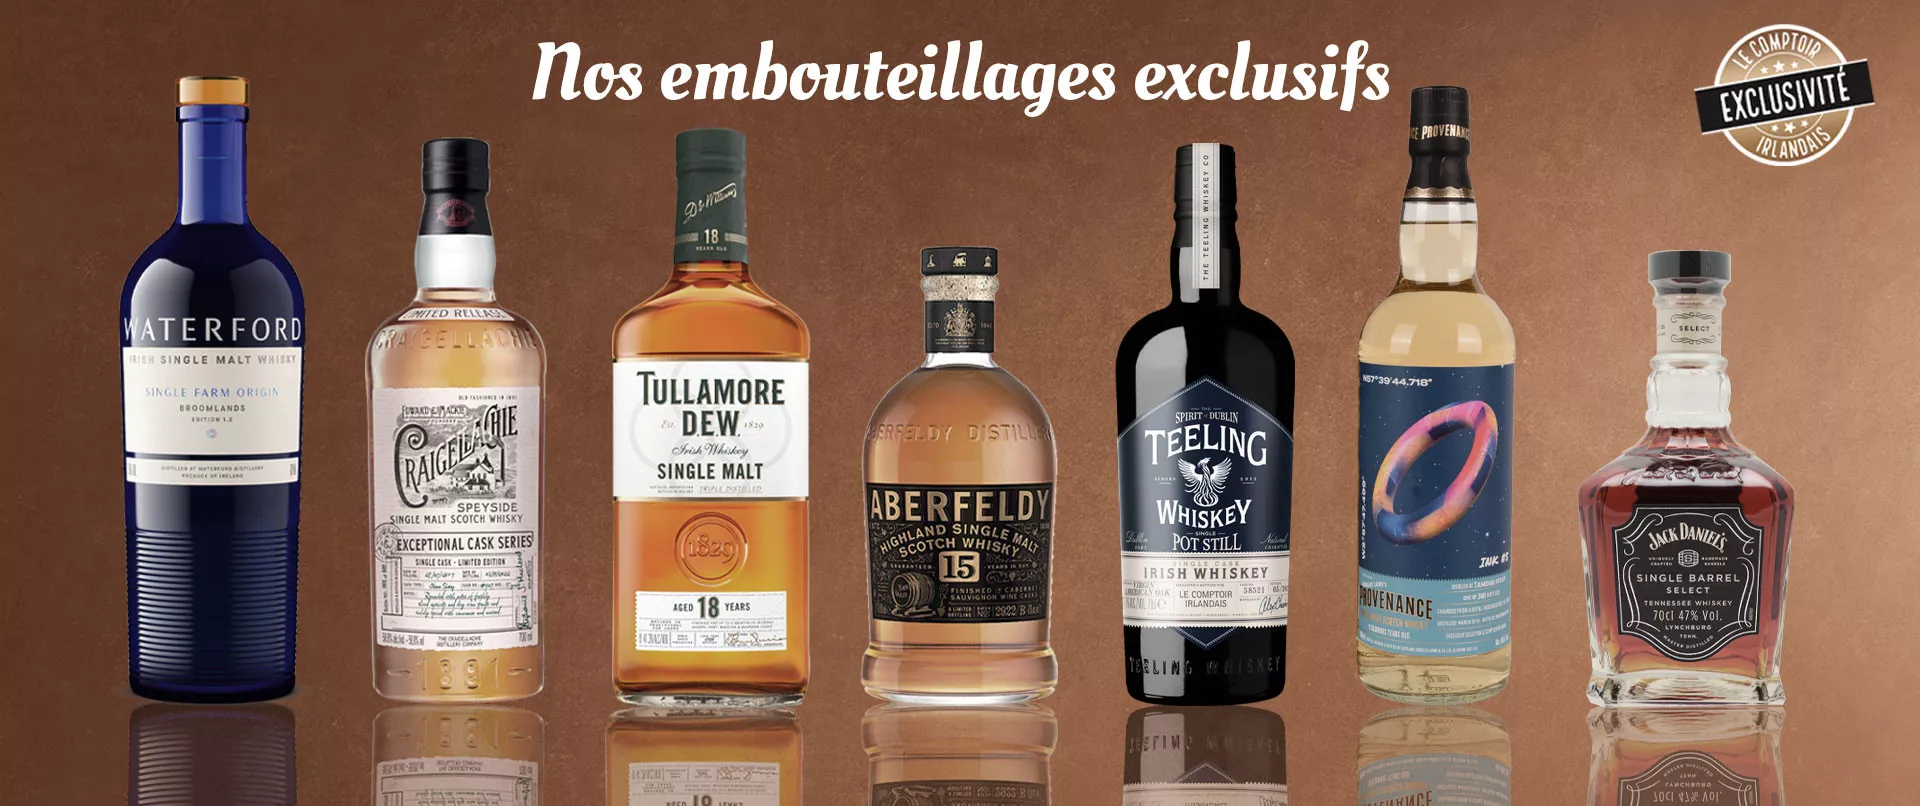 Whiskies tourbés : les dernières éditions d'Octomore au Comptoir Irlandais  - Actualité - Le Comptoir Irlandais